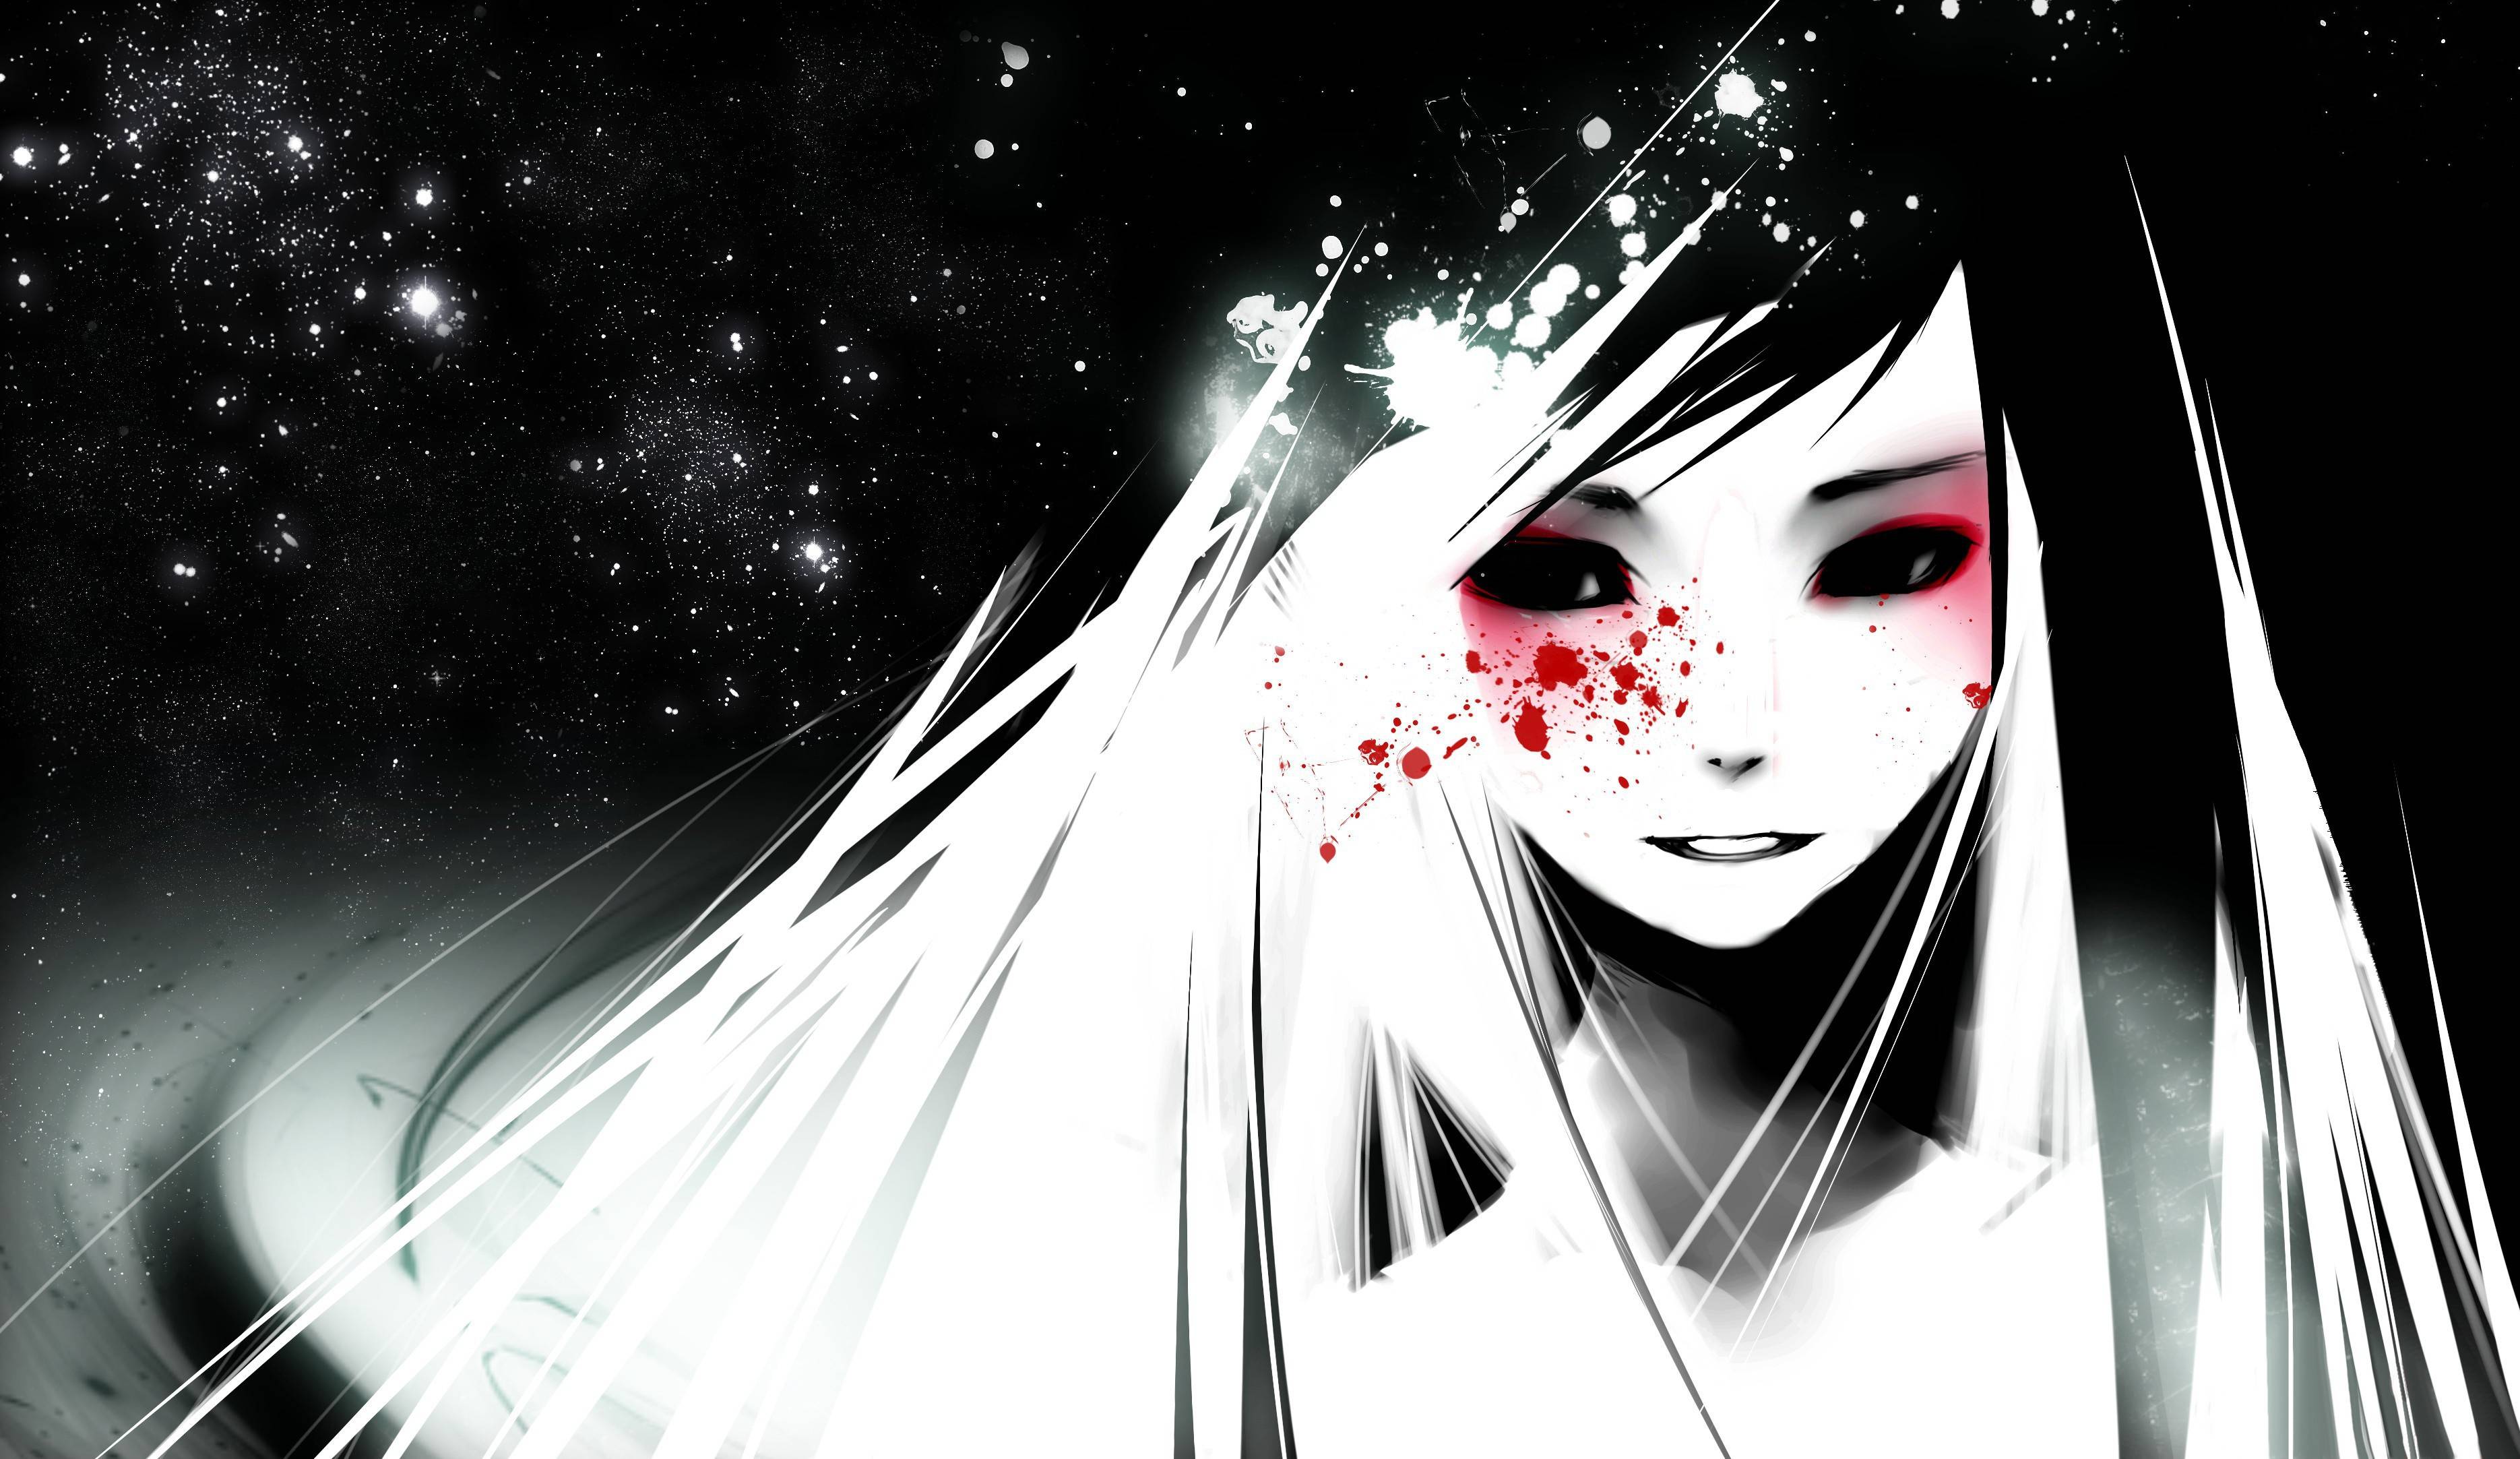 Sad Anime Girl Black and White Wallpapers - Top Free Sad Anime Girl Black  and White Backgrounds - WallpaperAccess